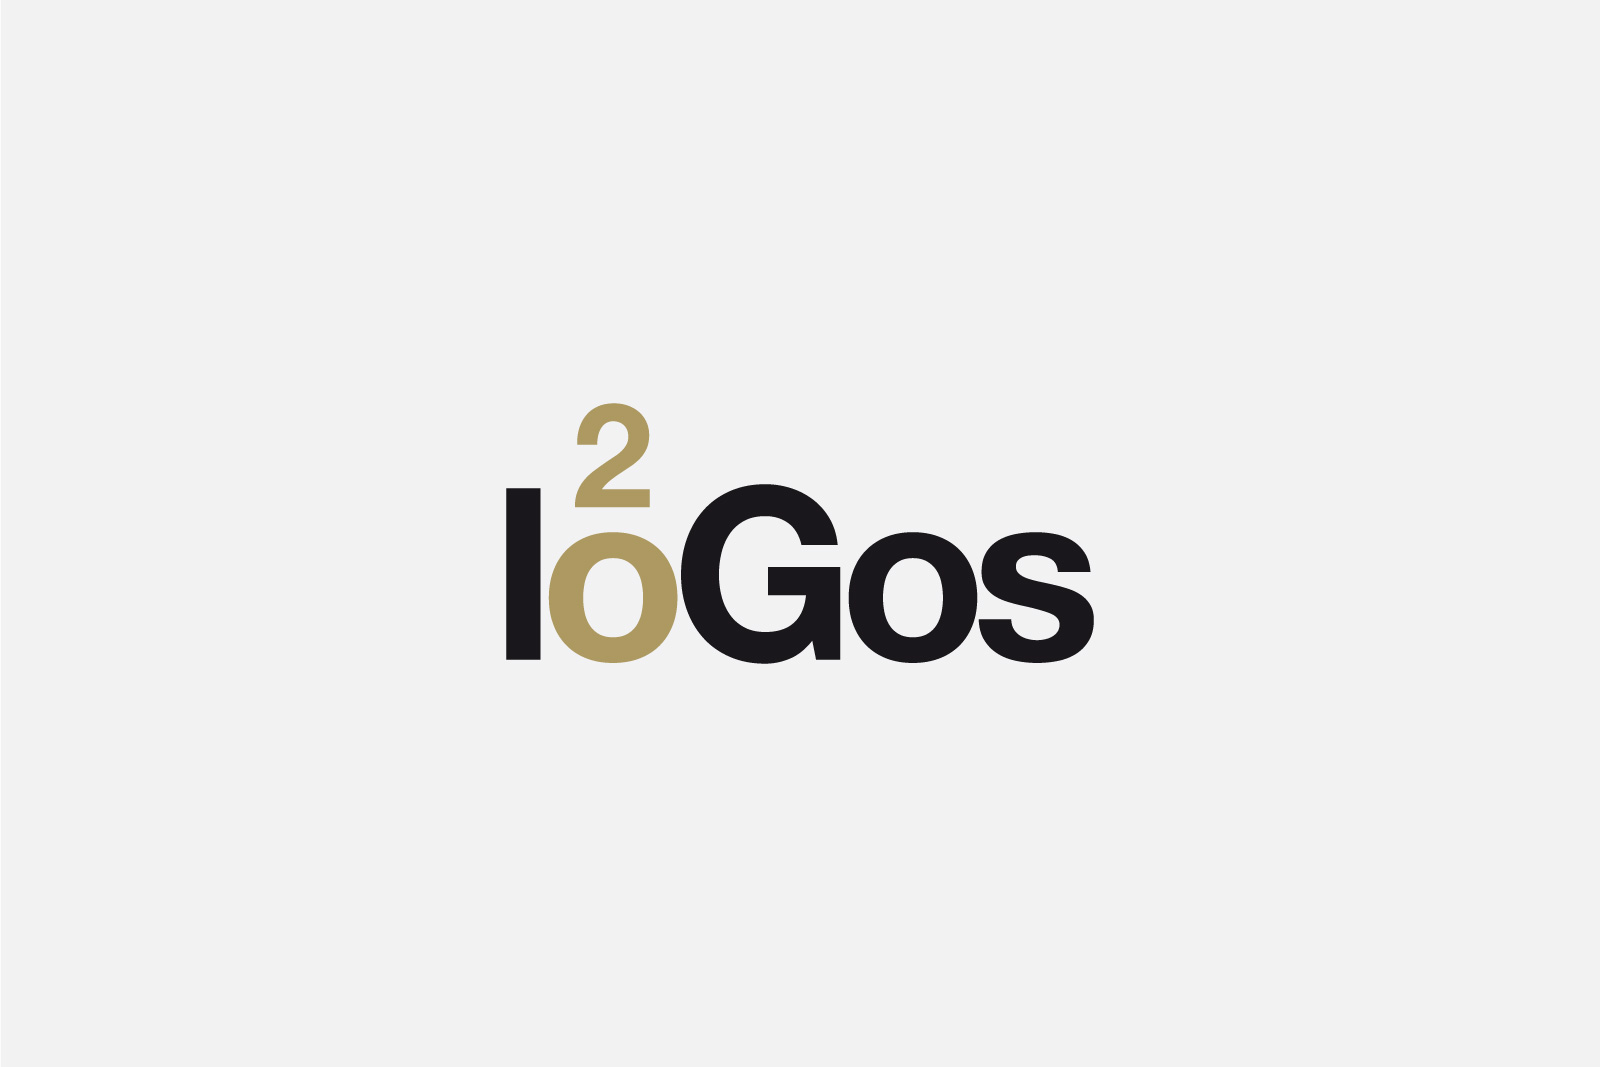 20 logos